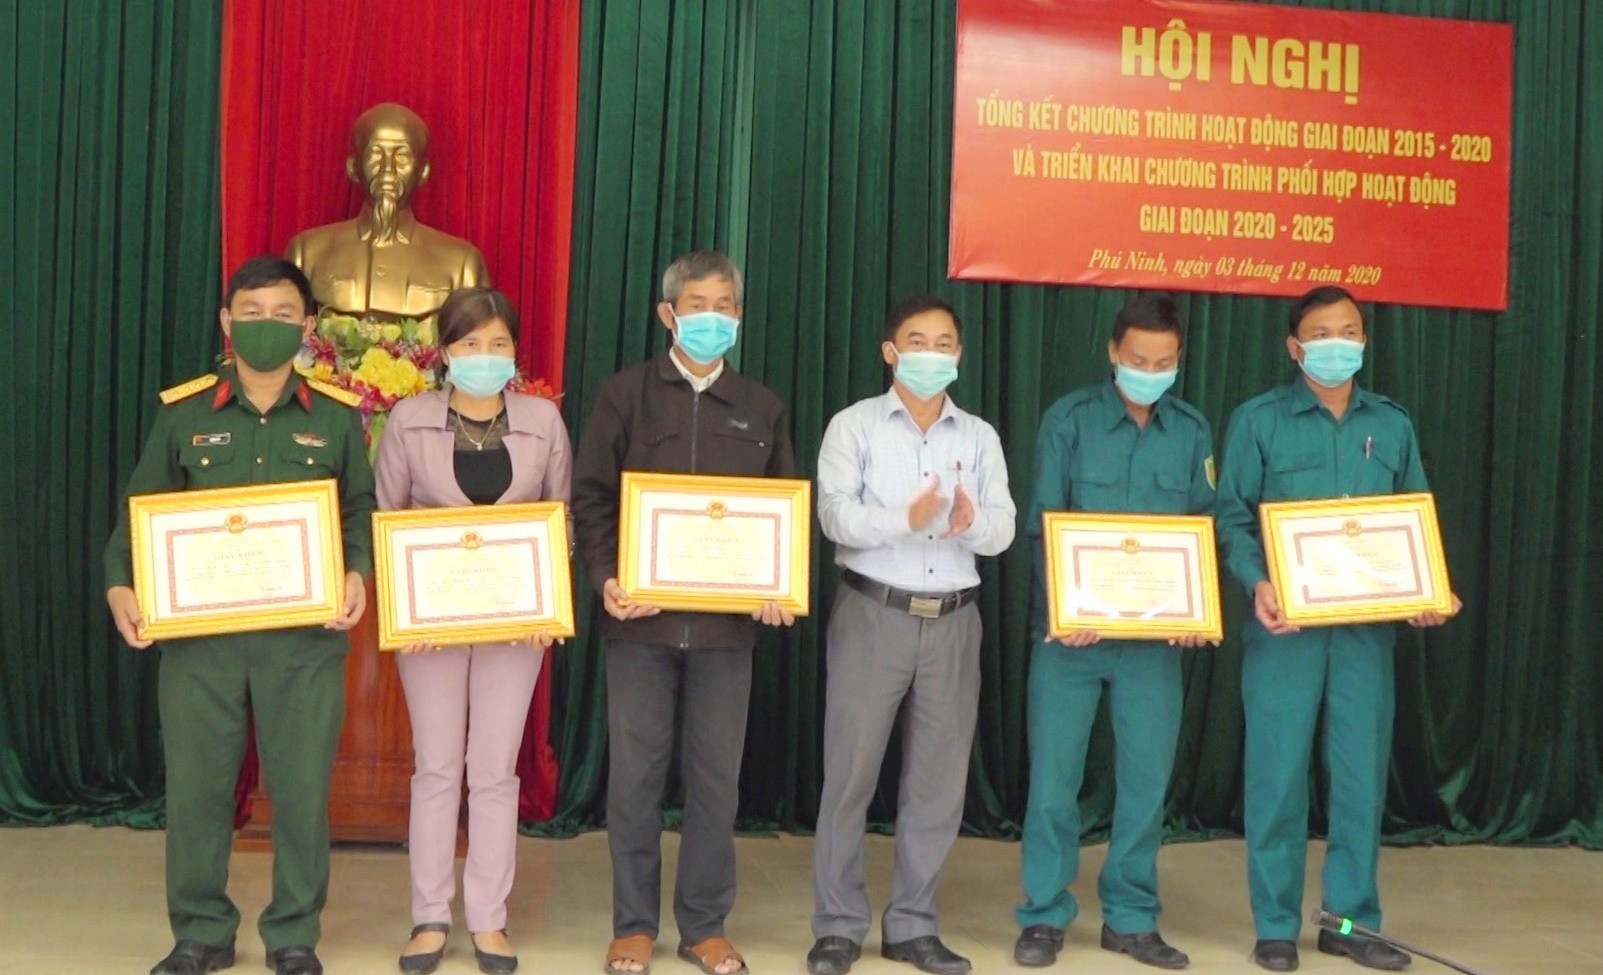 Phú Ninh khen thưởng 5 tập thể có thành tích trong hoạt động phối hợp giữa Ban Chỉ huy Quân sự (CHQS) với các tổ chức chính trị - xã hội (CT-XH) huyện. Ảnh: H.C